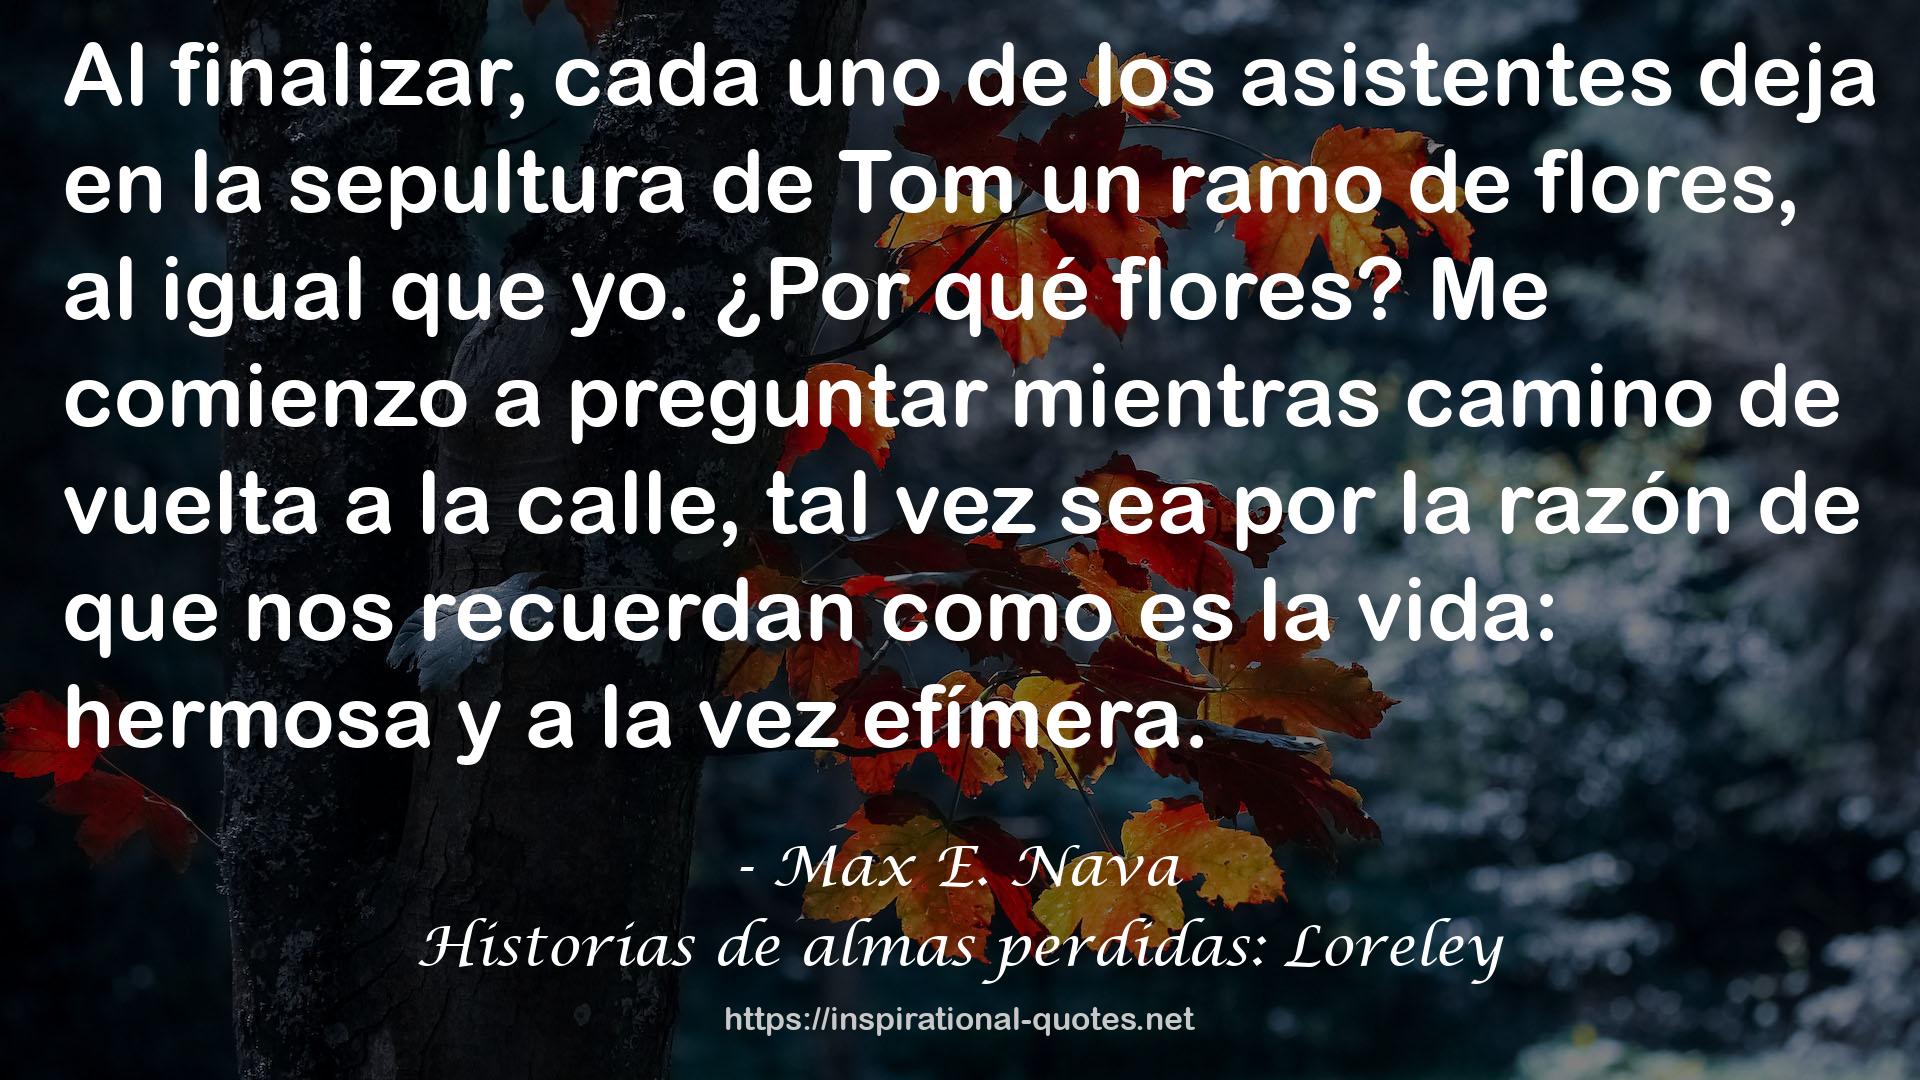 Max E. Nava QUOTES